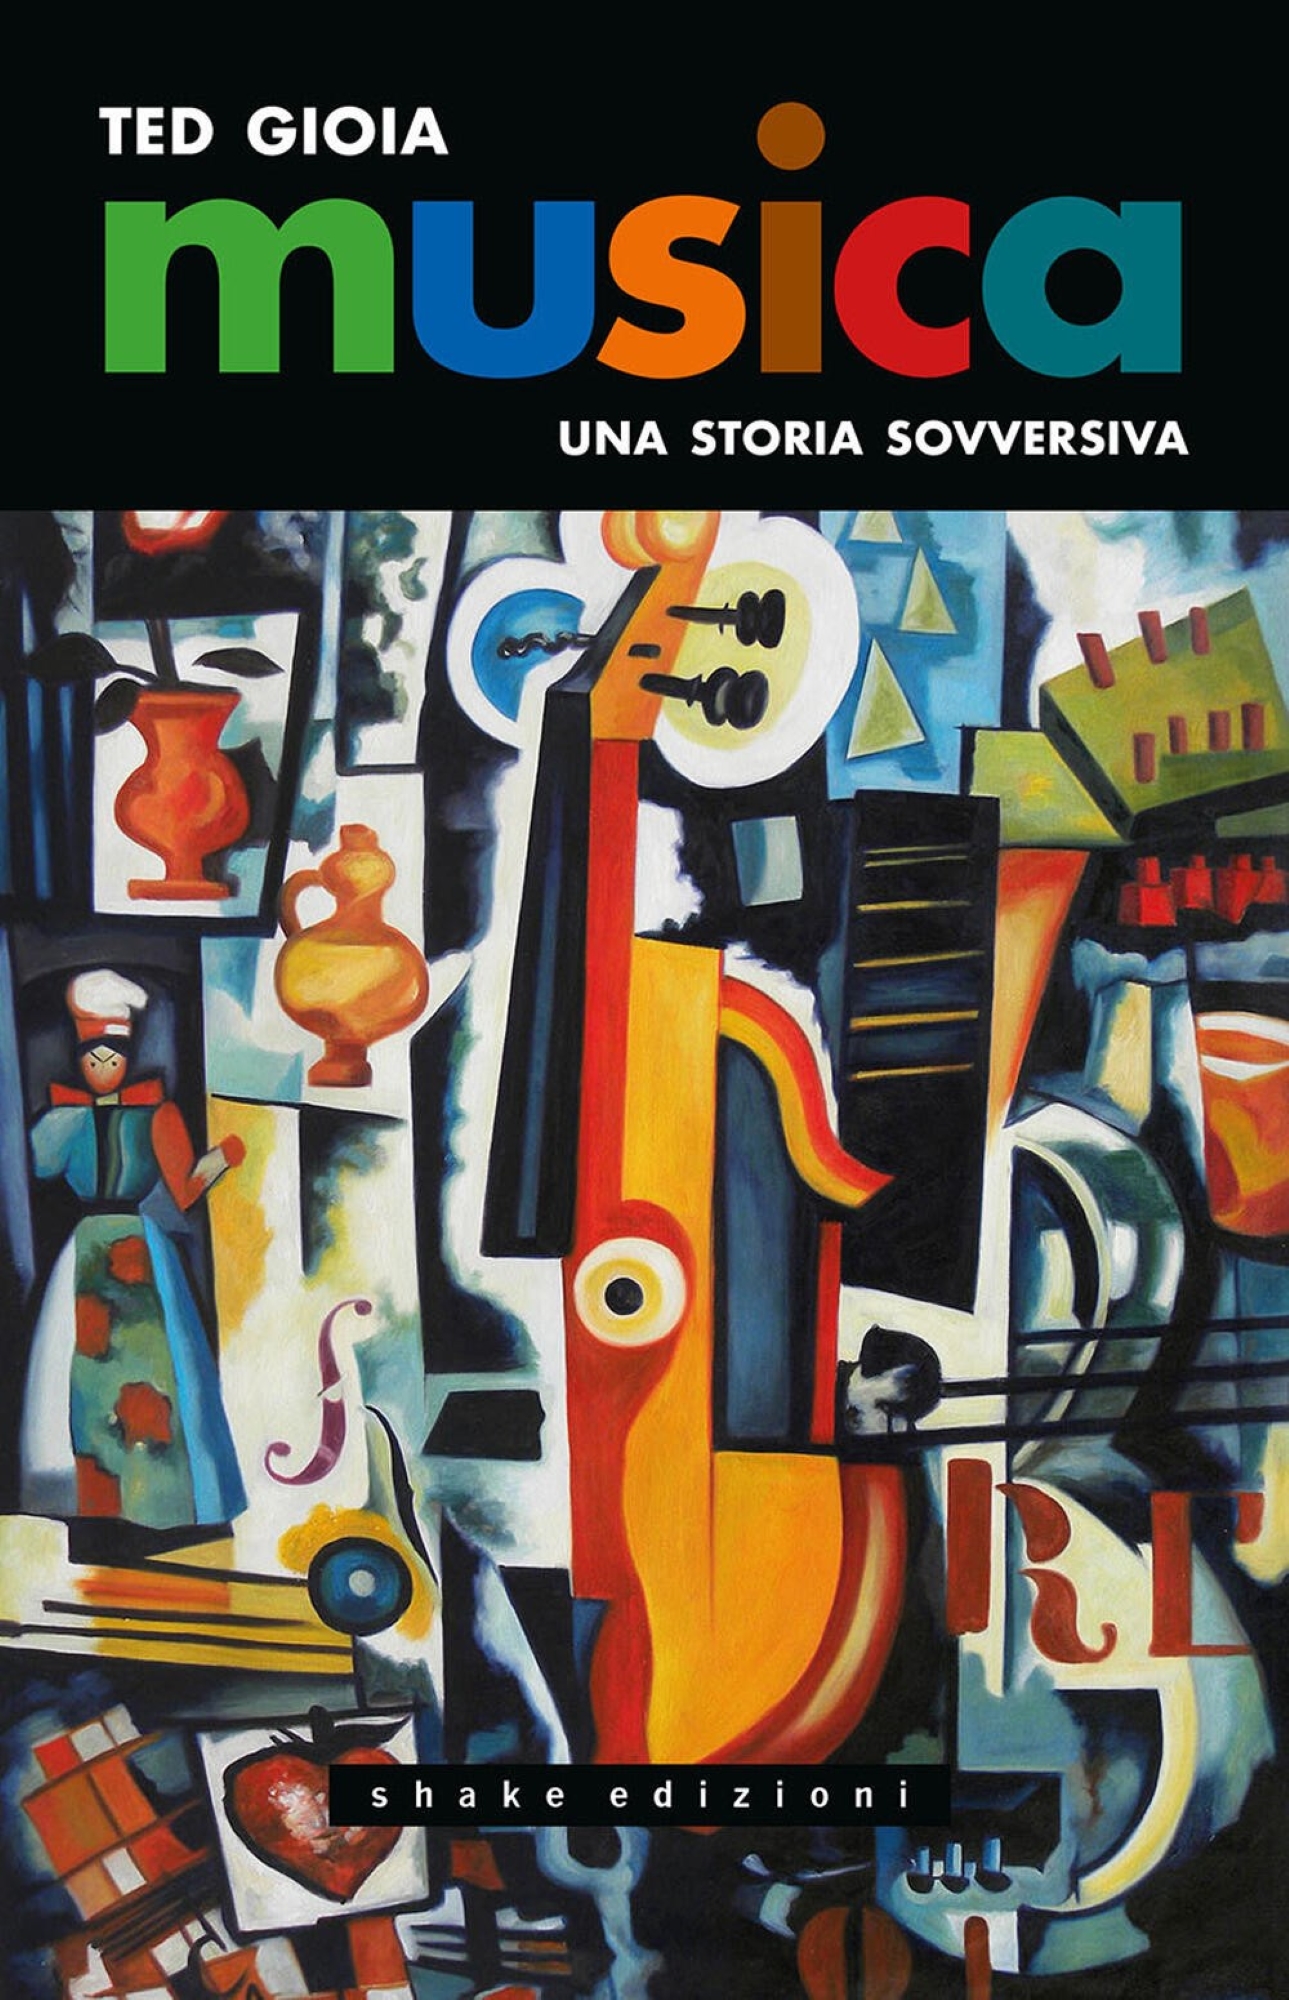 Ted Gioia, Musica. Una Storia Sovversiva, Shake Edizioni, Milano, 2023